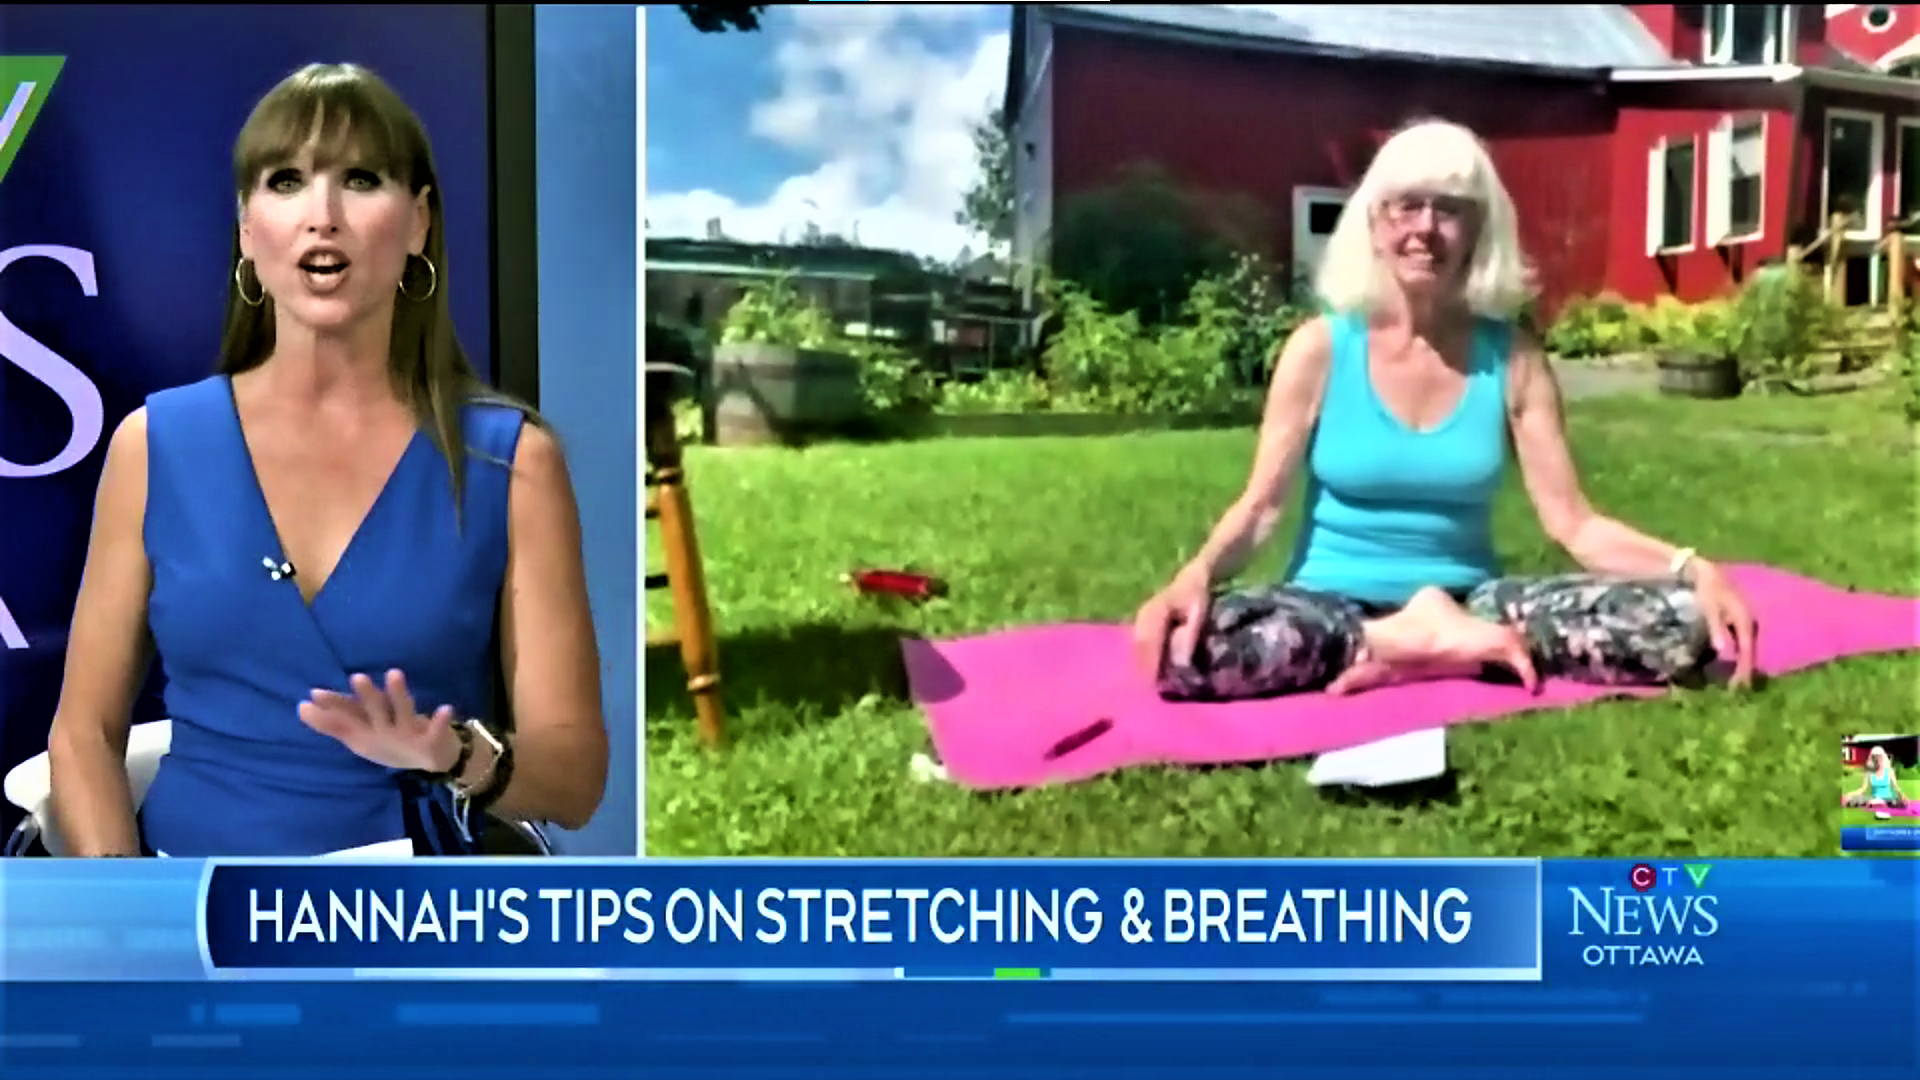 Vankleek Hill yoga instructor Hannah Hamsa makes appearance on CTV Ottawa newscast